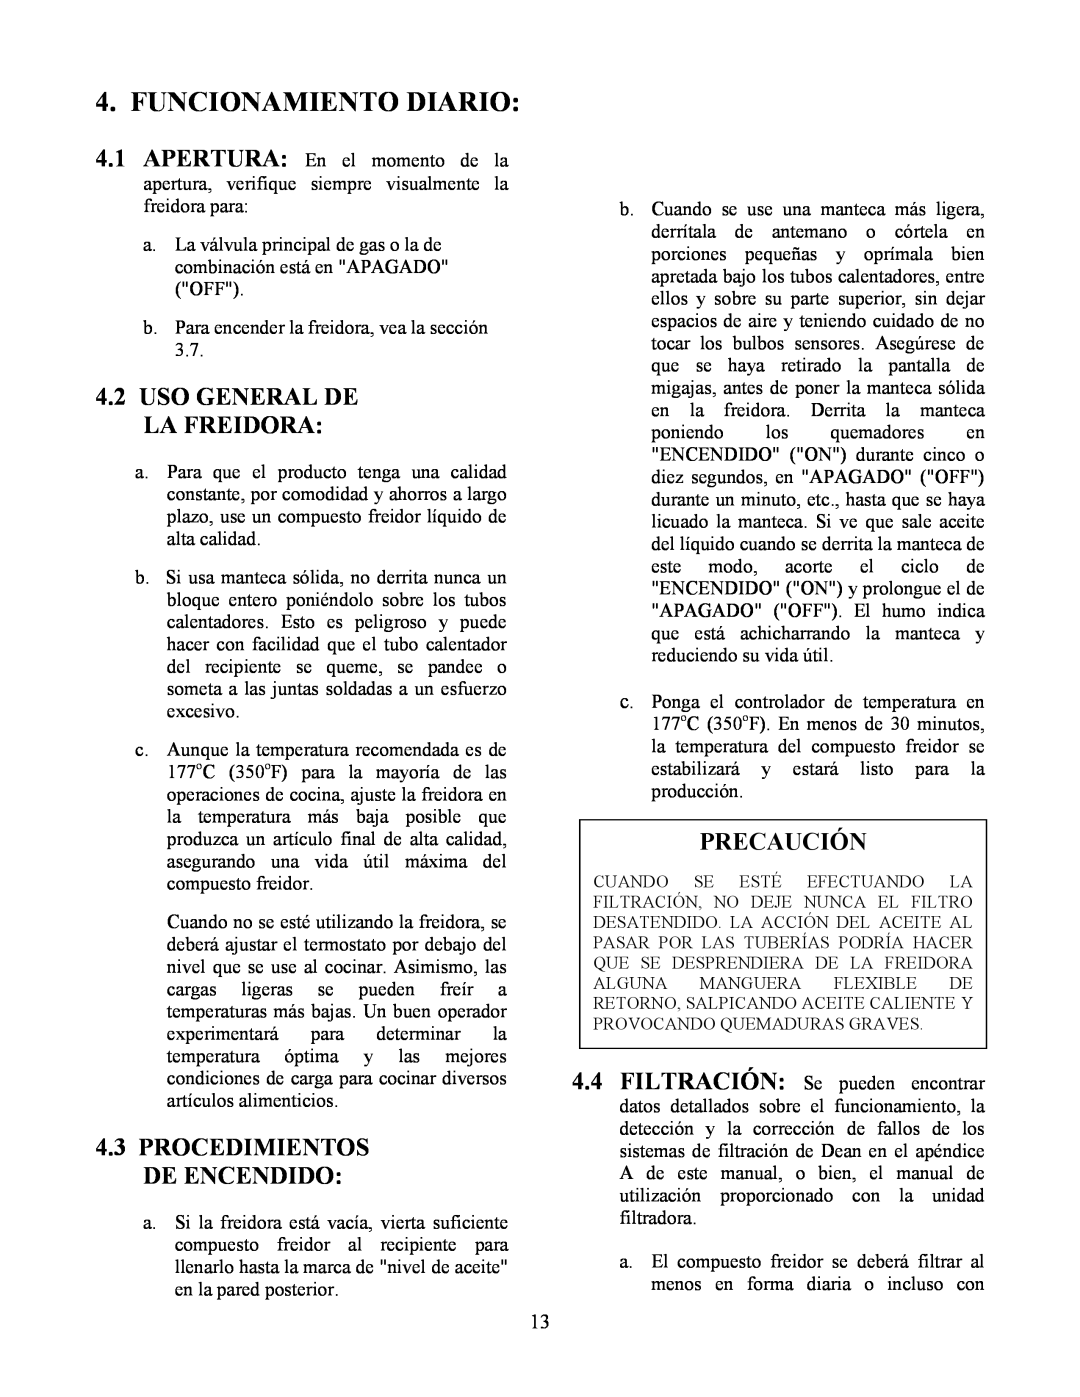 Frymaster Y SM80 manual Funcionamiento Diario, 4.2USO GENERAL DE LA FREIDORA, Precaución, 4.3PROCEDIMIENTOS DE ENCENDIDO 